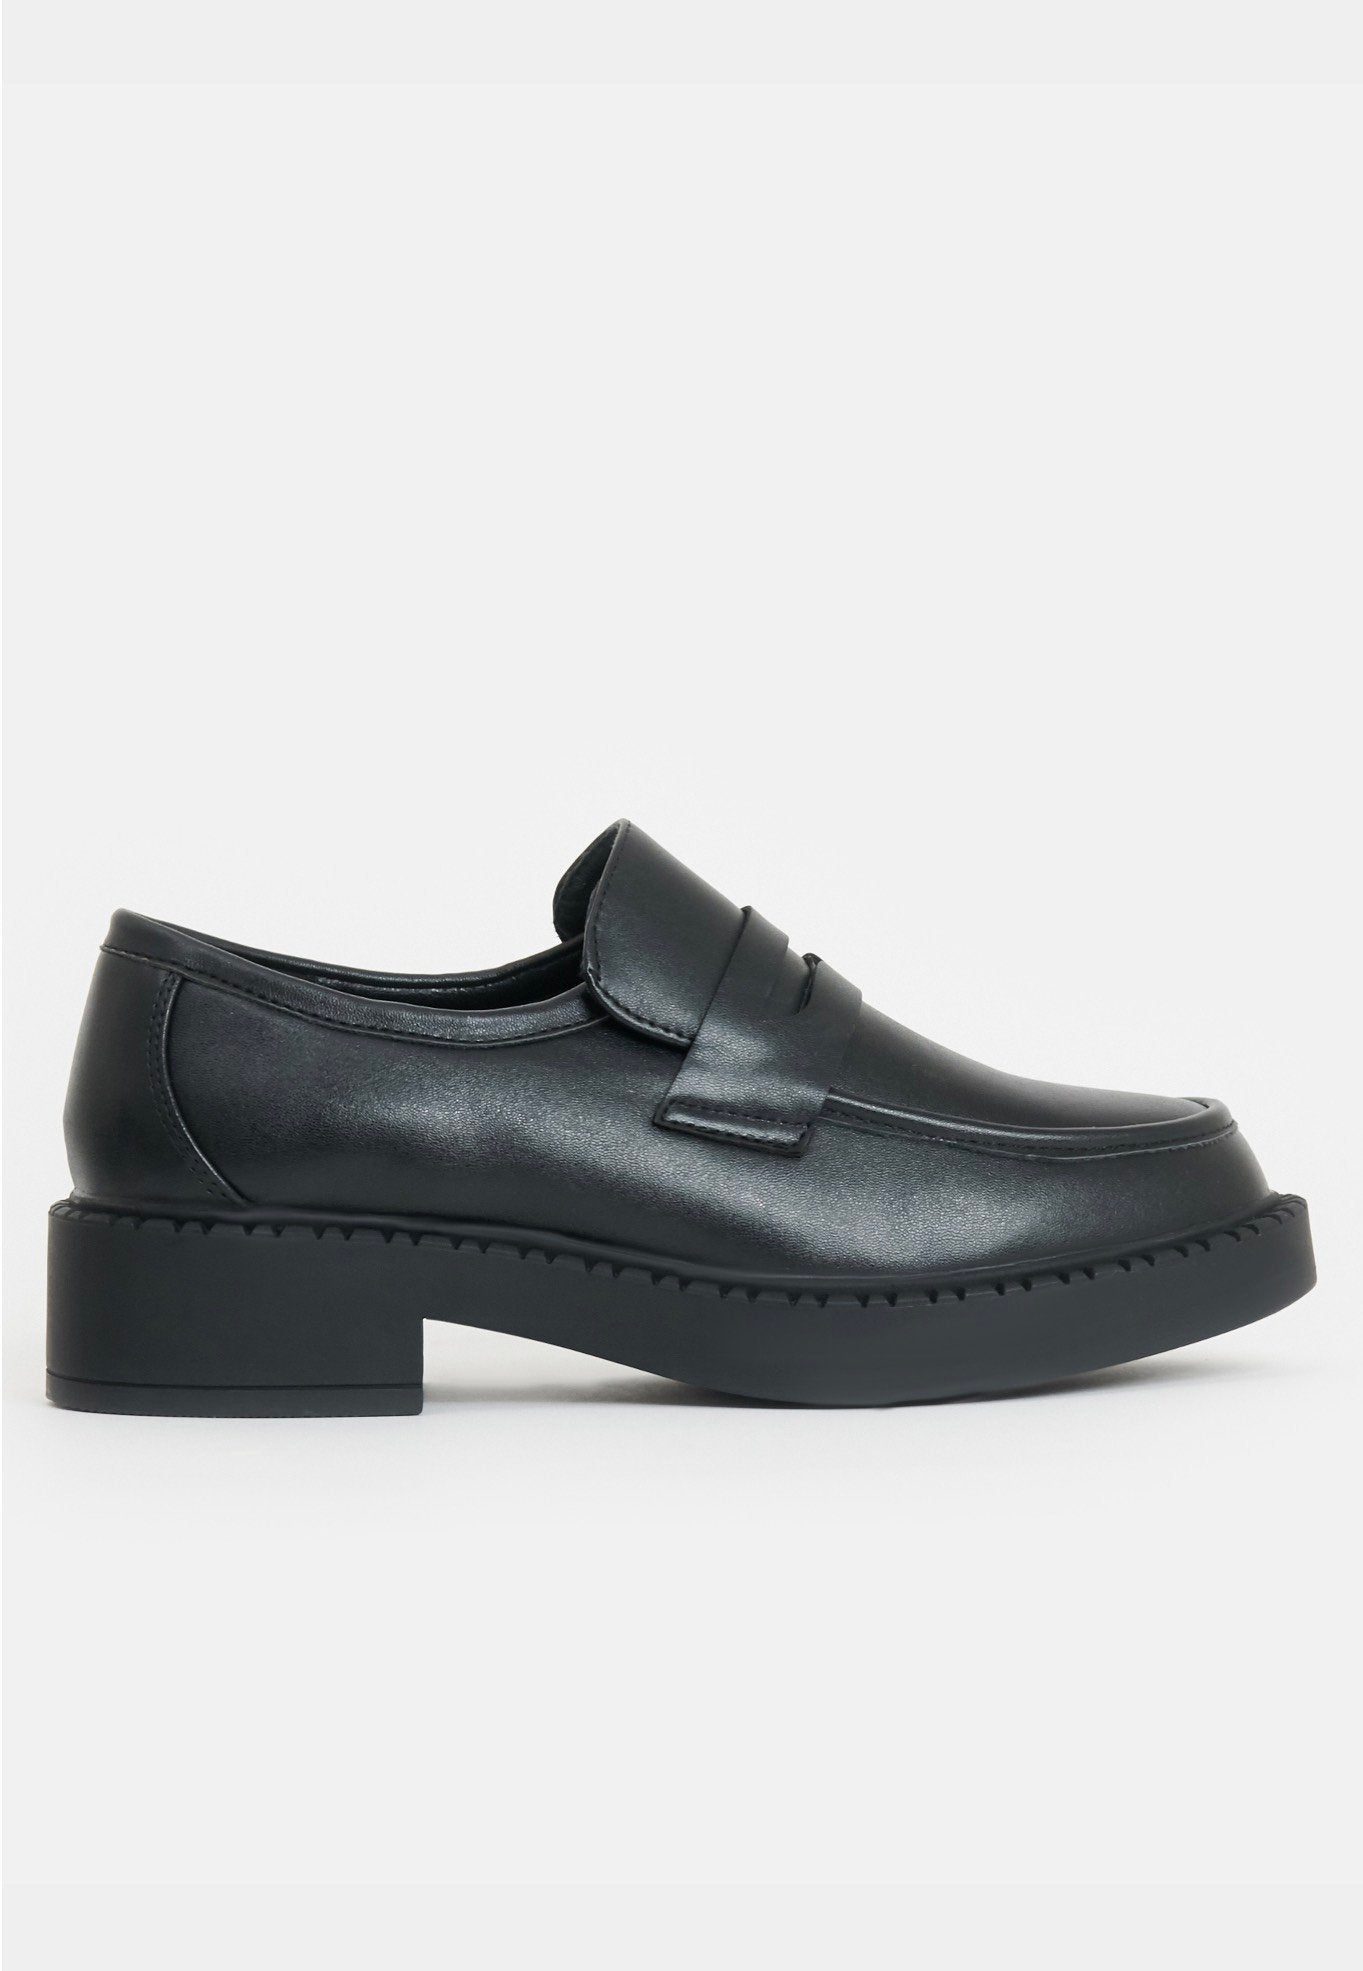 Koi Footwear - Dorado Black Tale Loafers Black - Girl Shoes